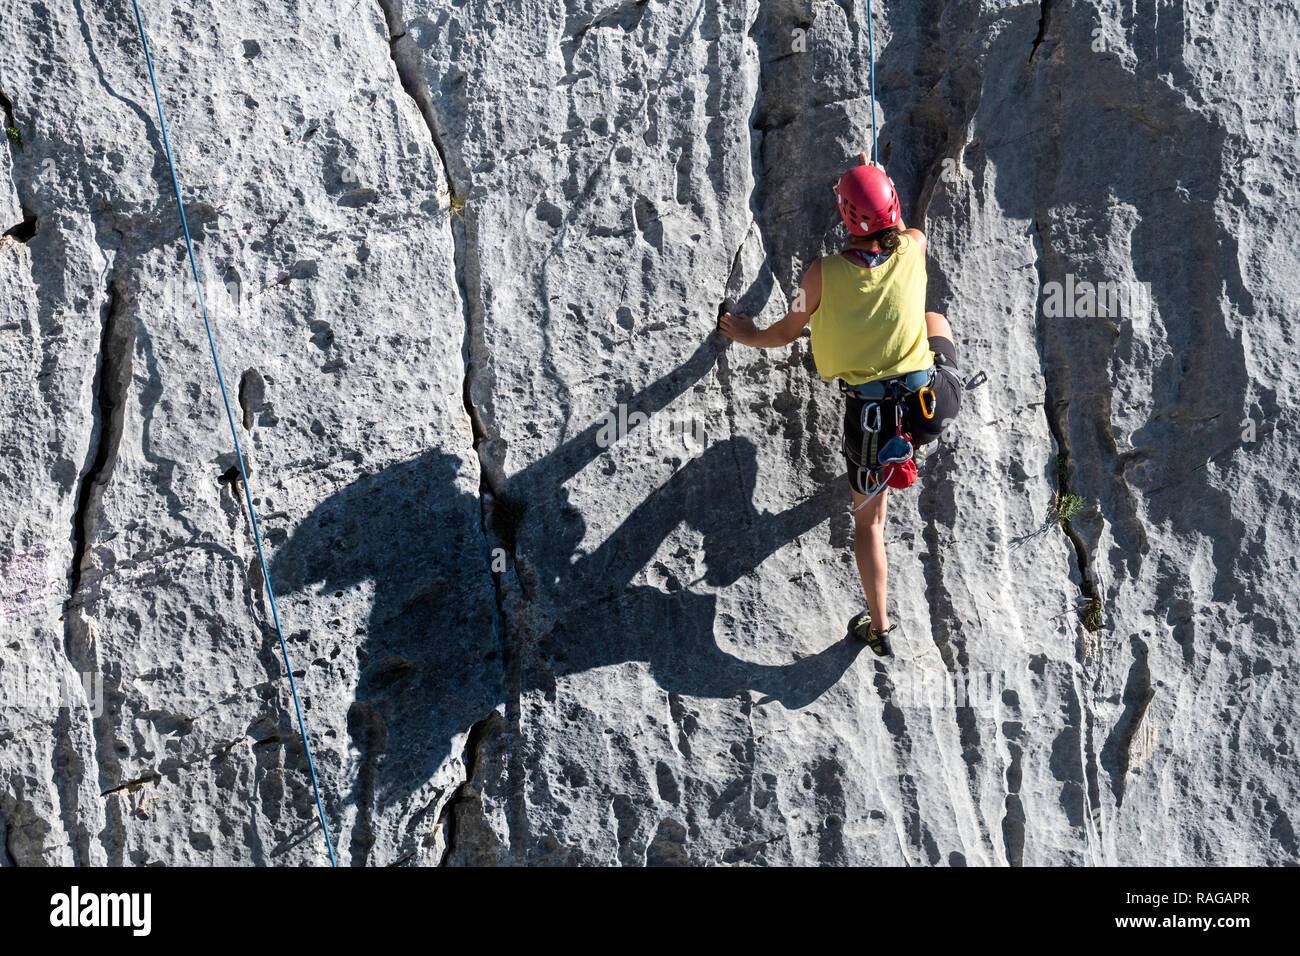 Kletterer klettern Fels in den Gorges du Verdon Verdon Schlucht / Canyon, Alpes-de-Haute-Provence, Provence - Alpes - Côte d'Azur, Frankreich Stockfoto